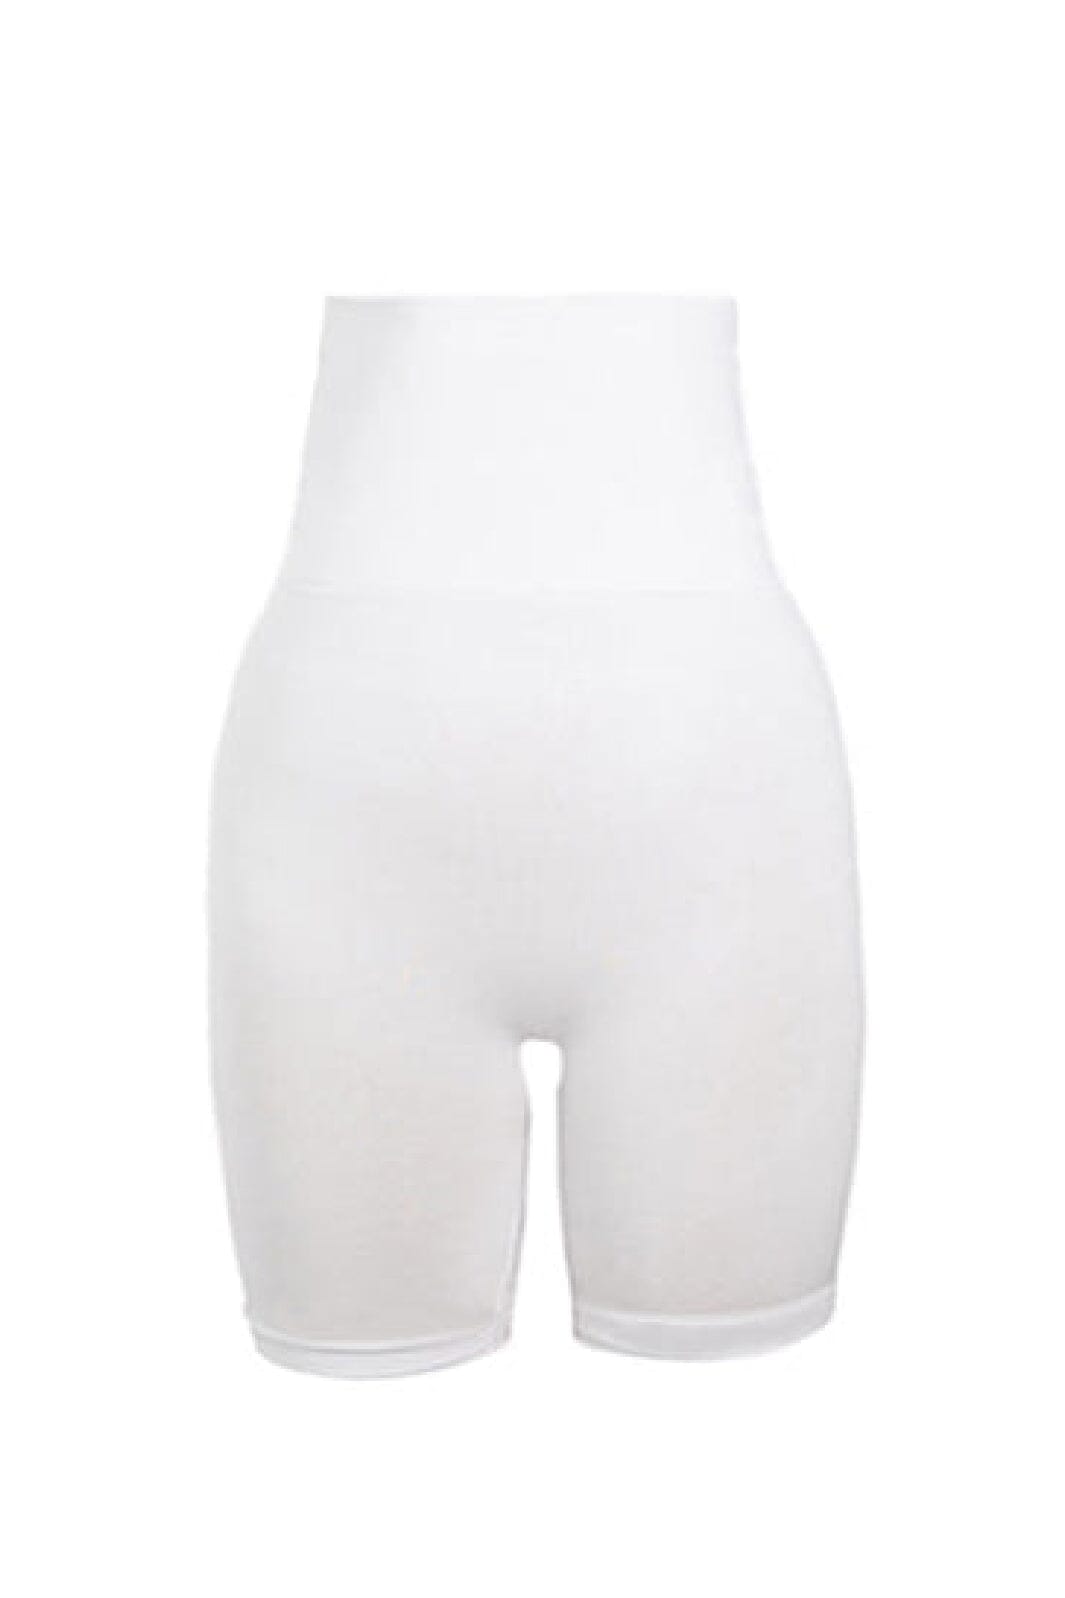 Soft basic - Soffi High shorts 2 pak - white Shorts 